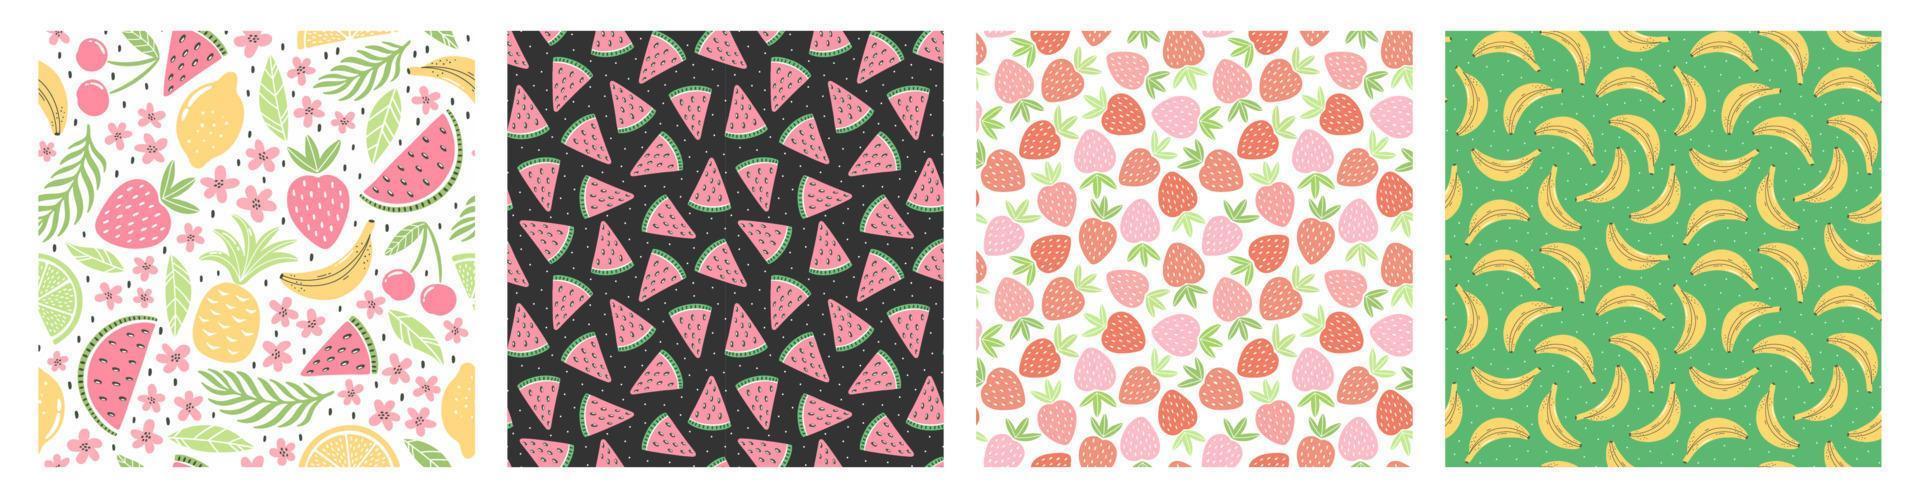 uppsättning sömlösa mönster med färgglada frukter för textildesign. sommar bakgrund i ljusa färger. handritade trendiga vektorillustrationer. vektor